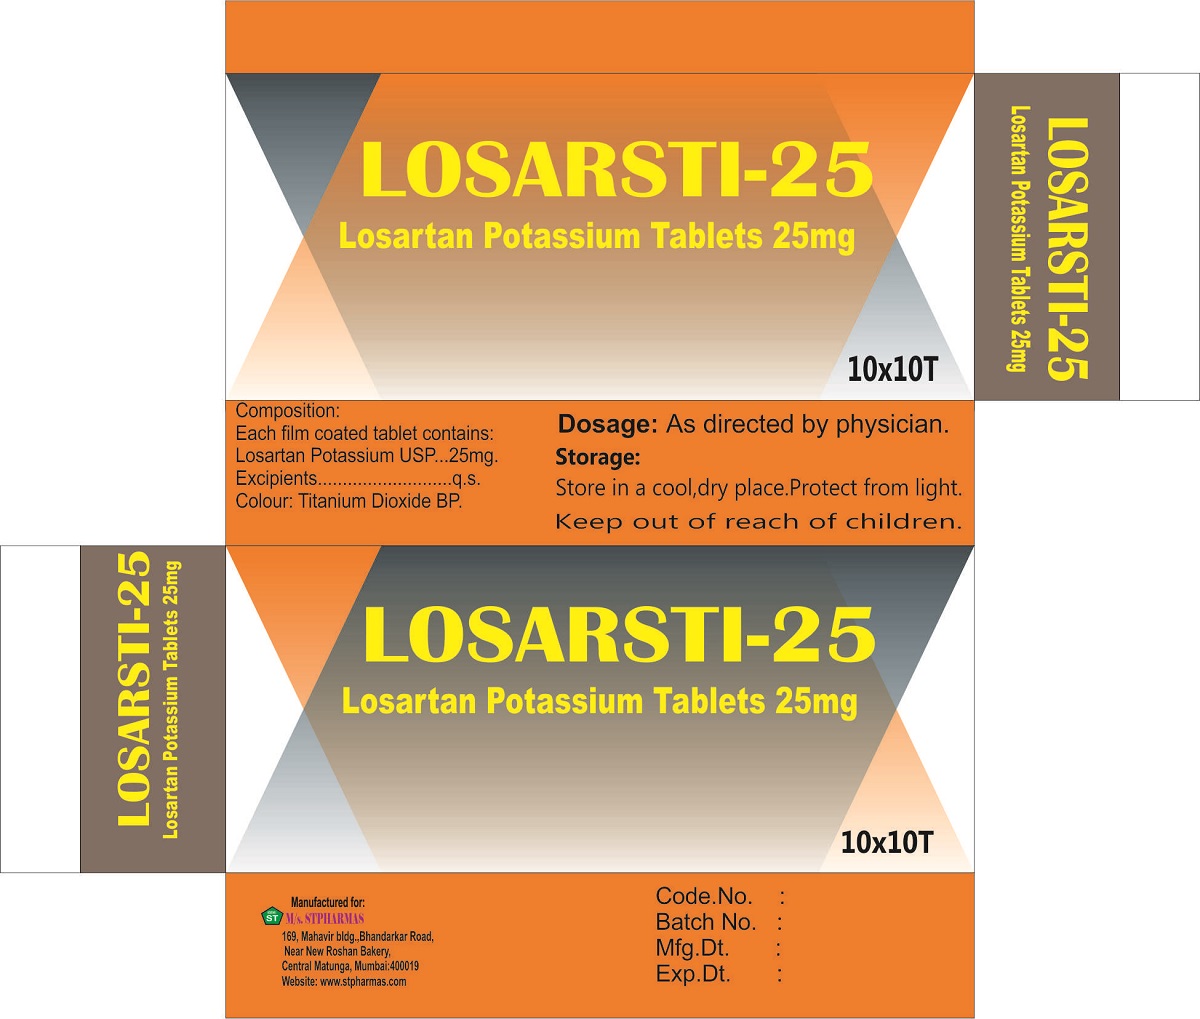 LOSARTI-25